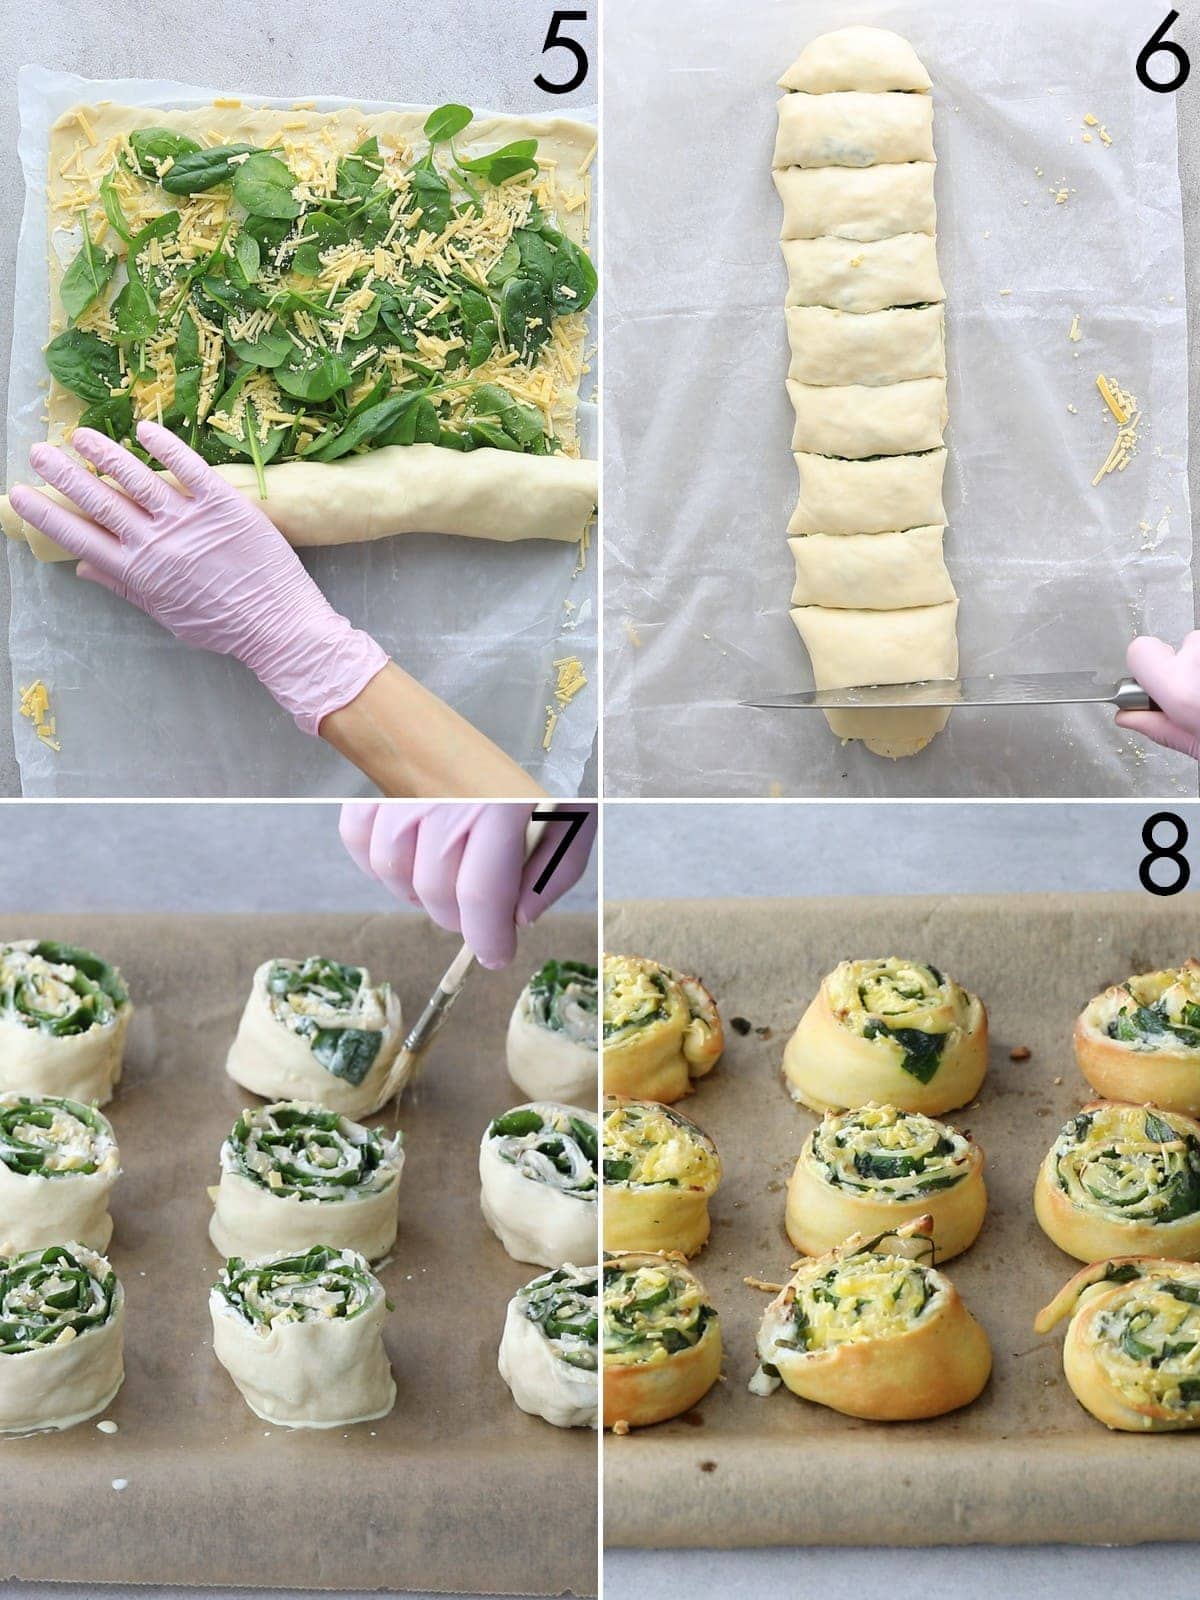 4 Schritt für Schritt Bilder der Herstellung von Spinat-Pizzabrötchen